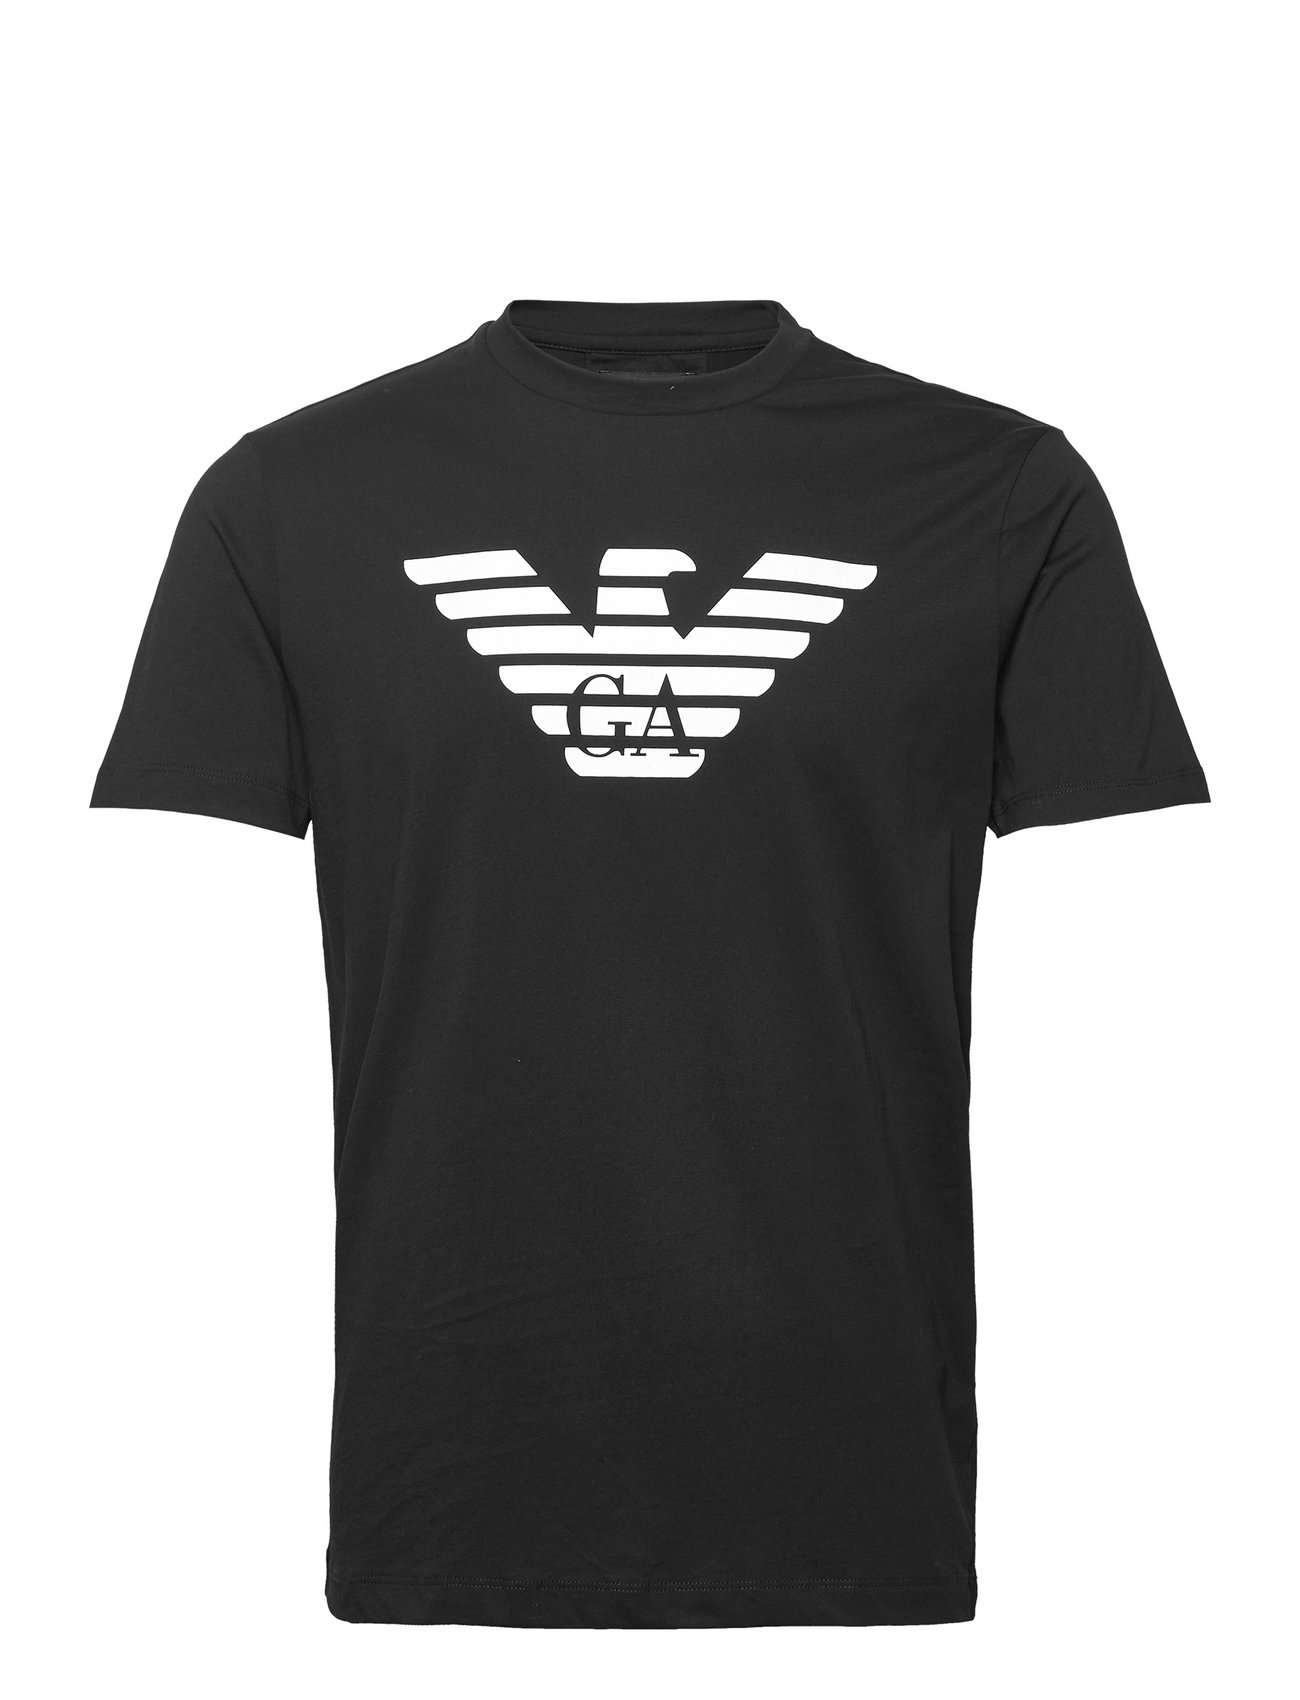 Emporio Armani T-shirt - T-Shirts - Boozt.com